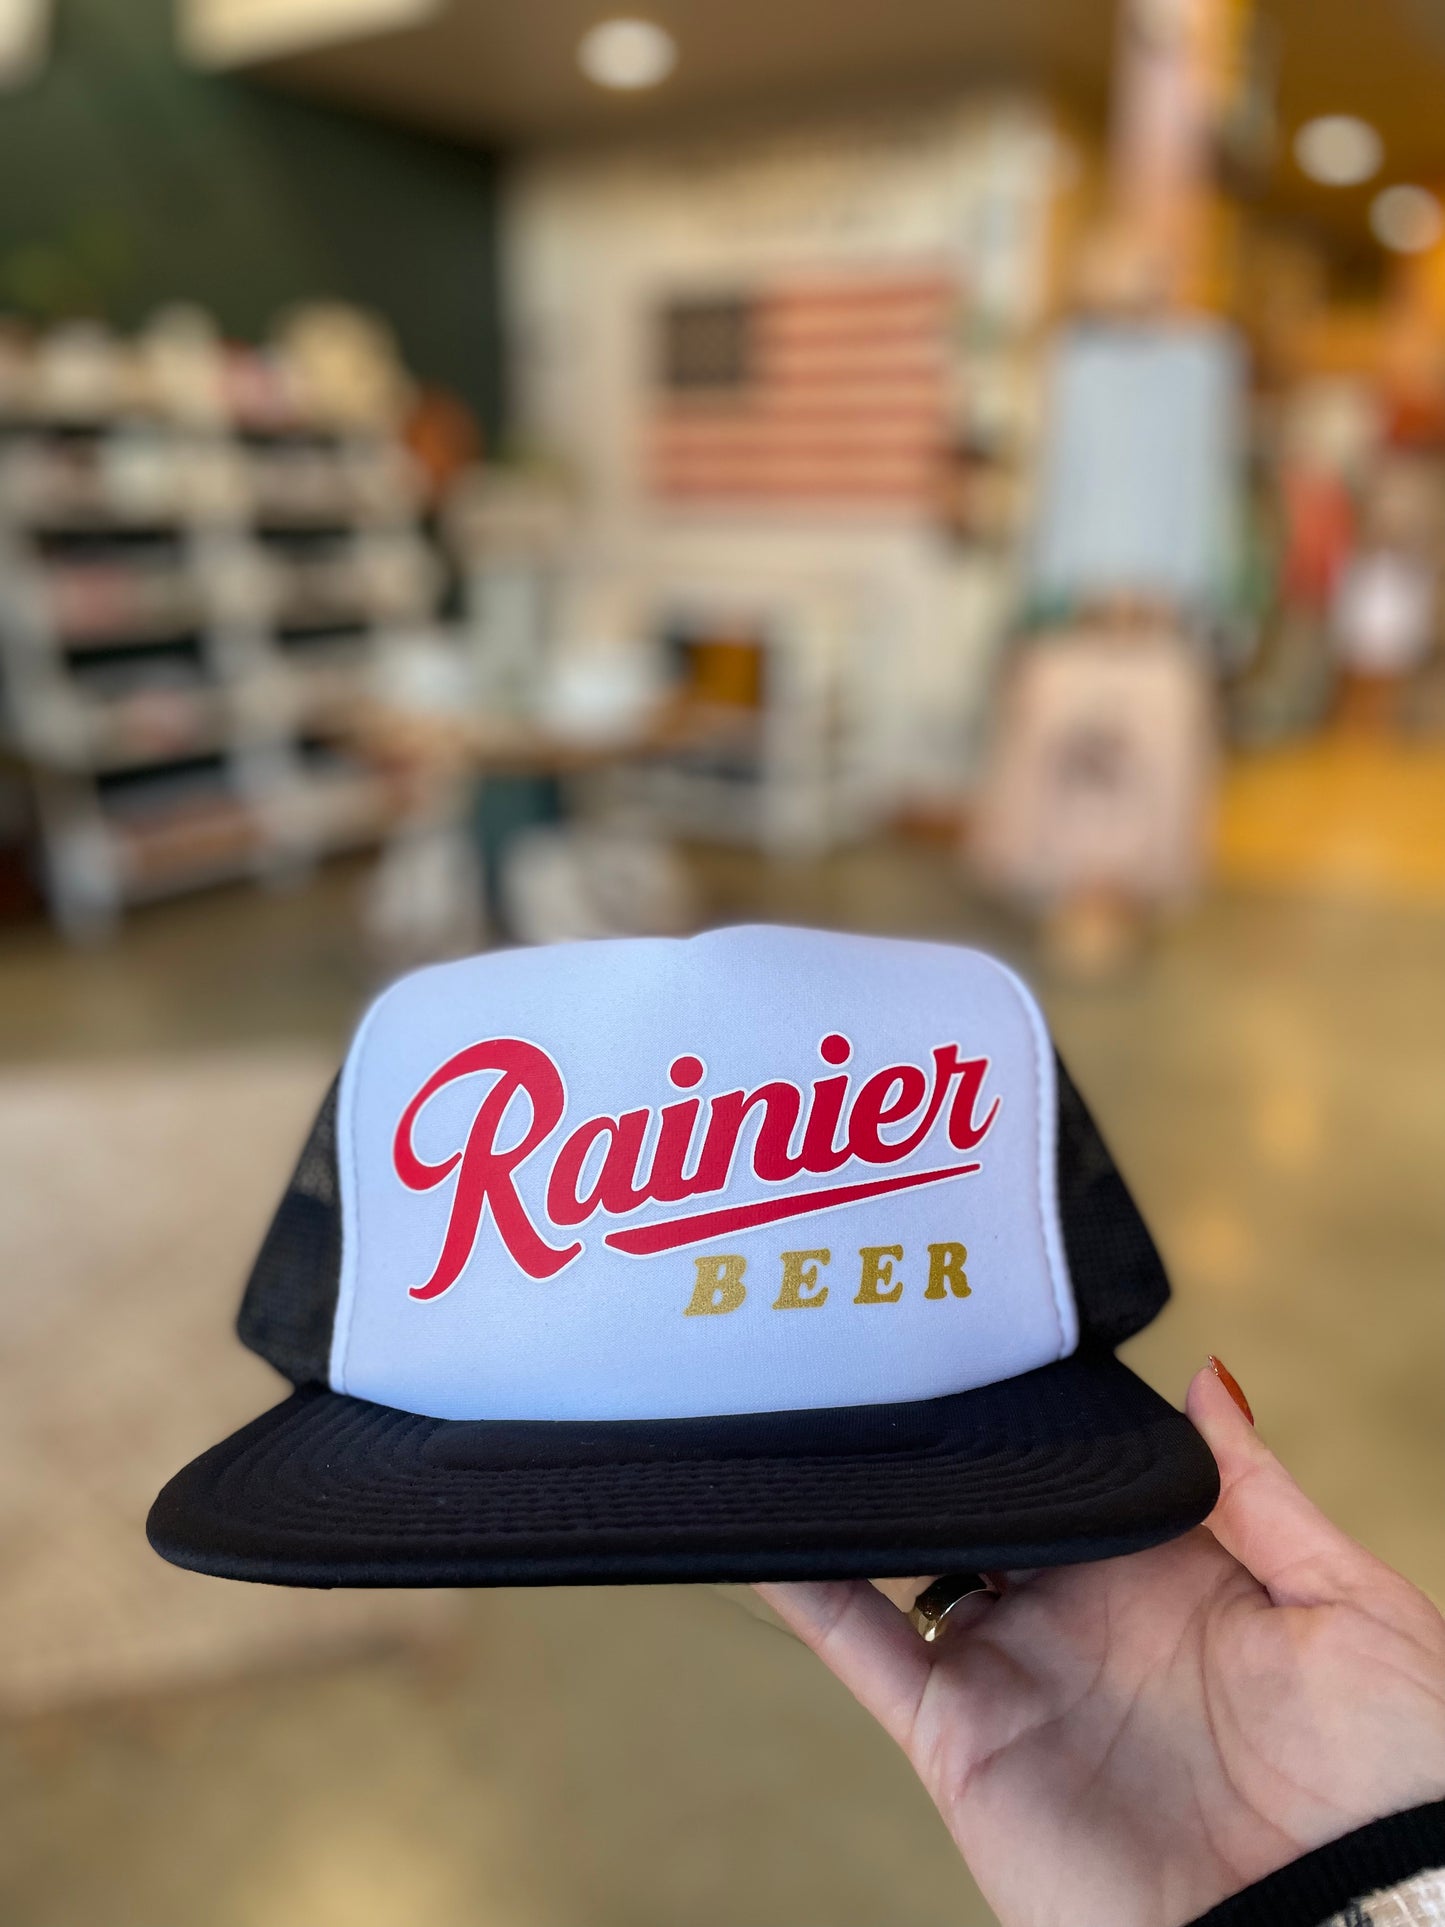 Rainier Beer Trucker Hat